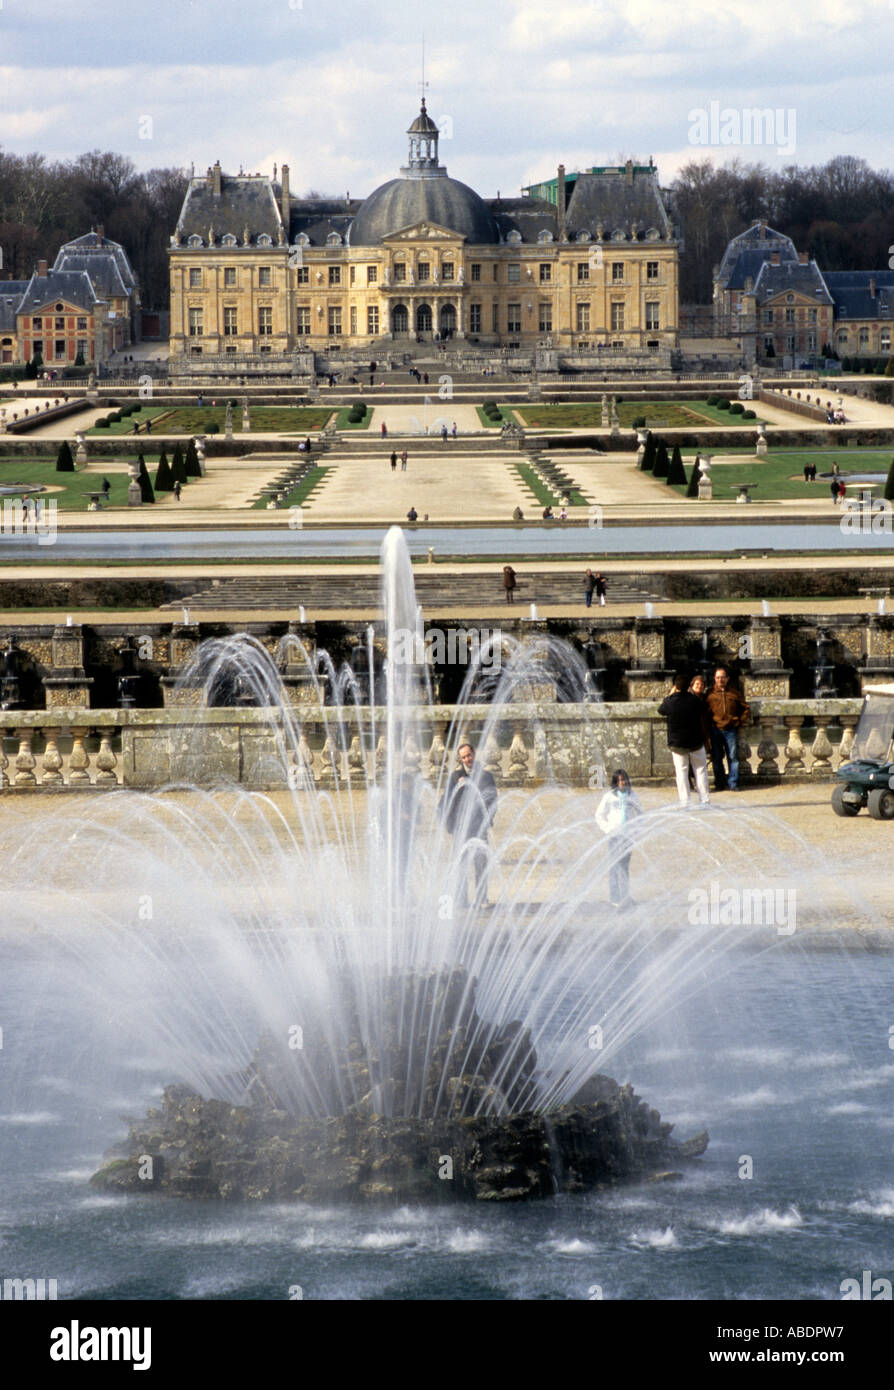 File:Château de Vaux-le-Vicomte et reflets dans l'eau 2.JPG